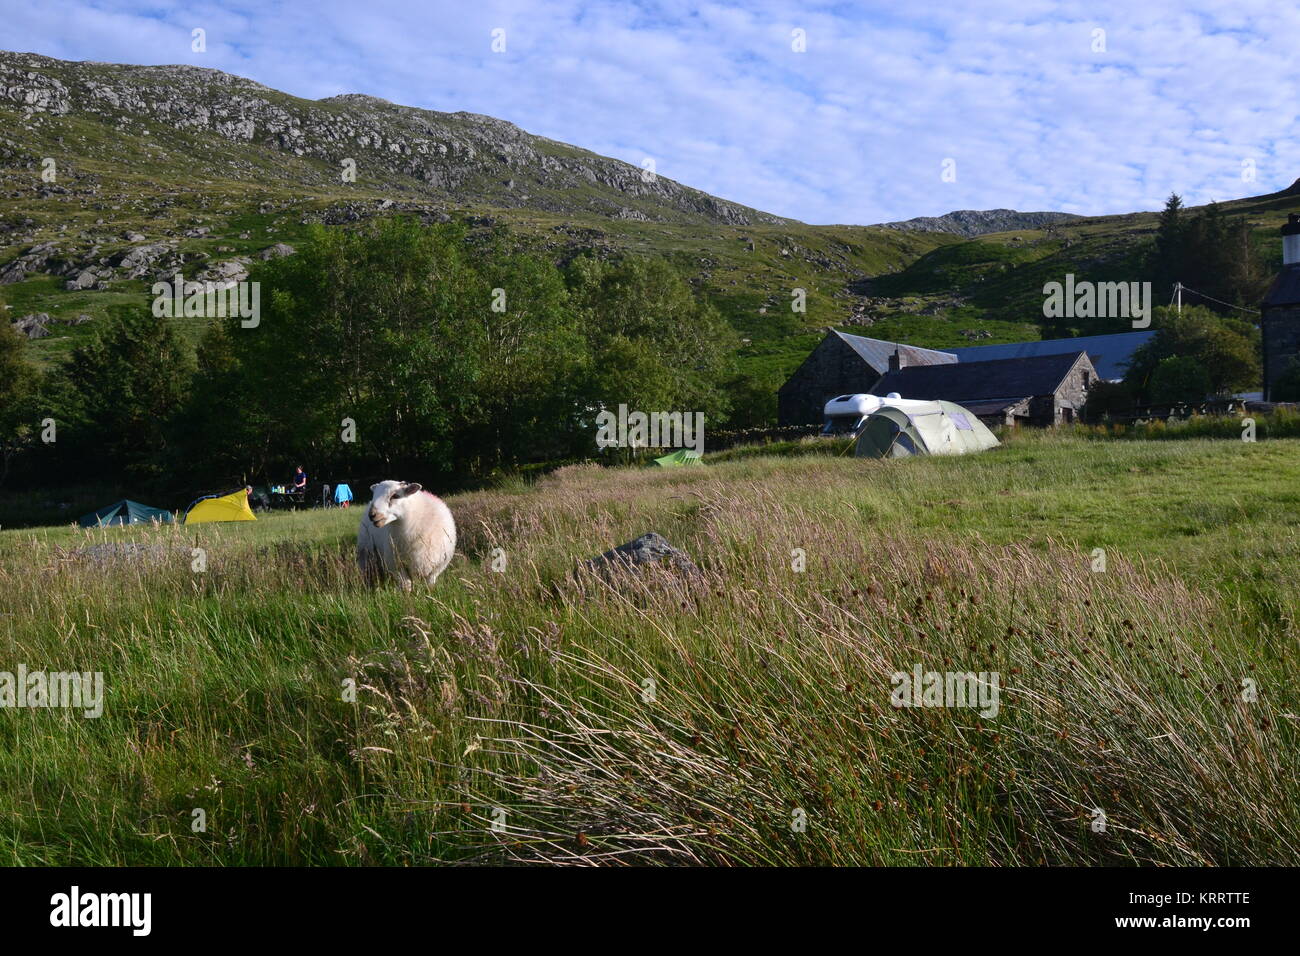 Pecore sul campeggio, con tende e camper in background.Gwern Usif Gof Campeggio ai piedi del monte Tryfan, Snowdonia, Wales, Regno Unito Foto Stock